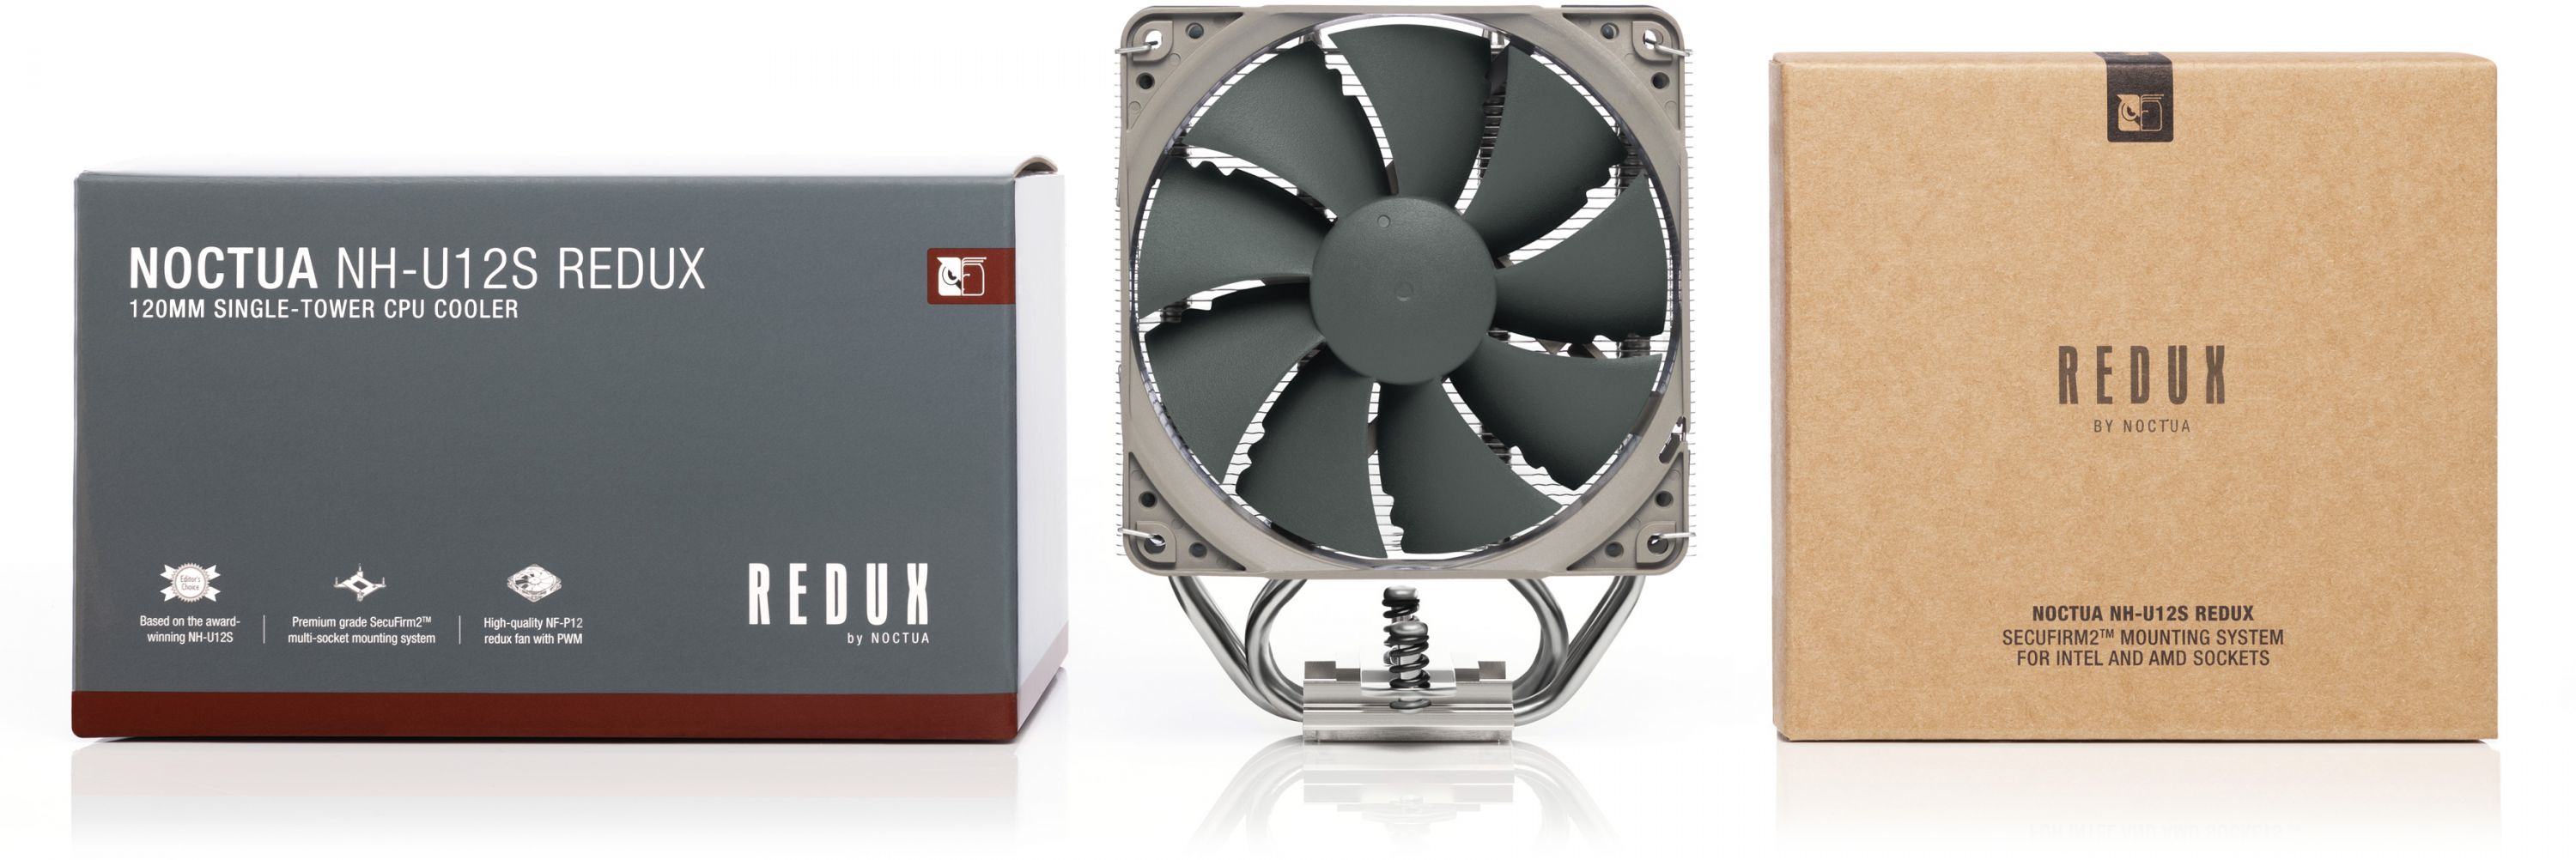  Noctua NH-U12S, Premium CPU Cooler with NF-F12